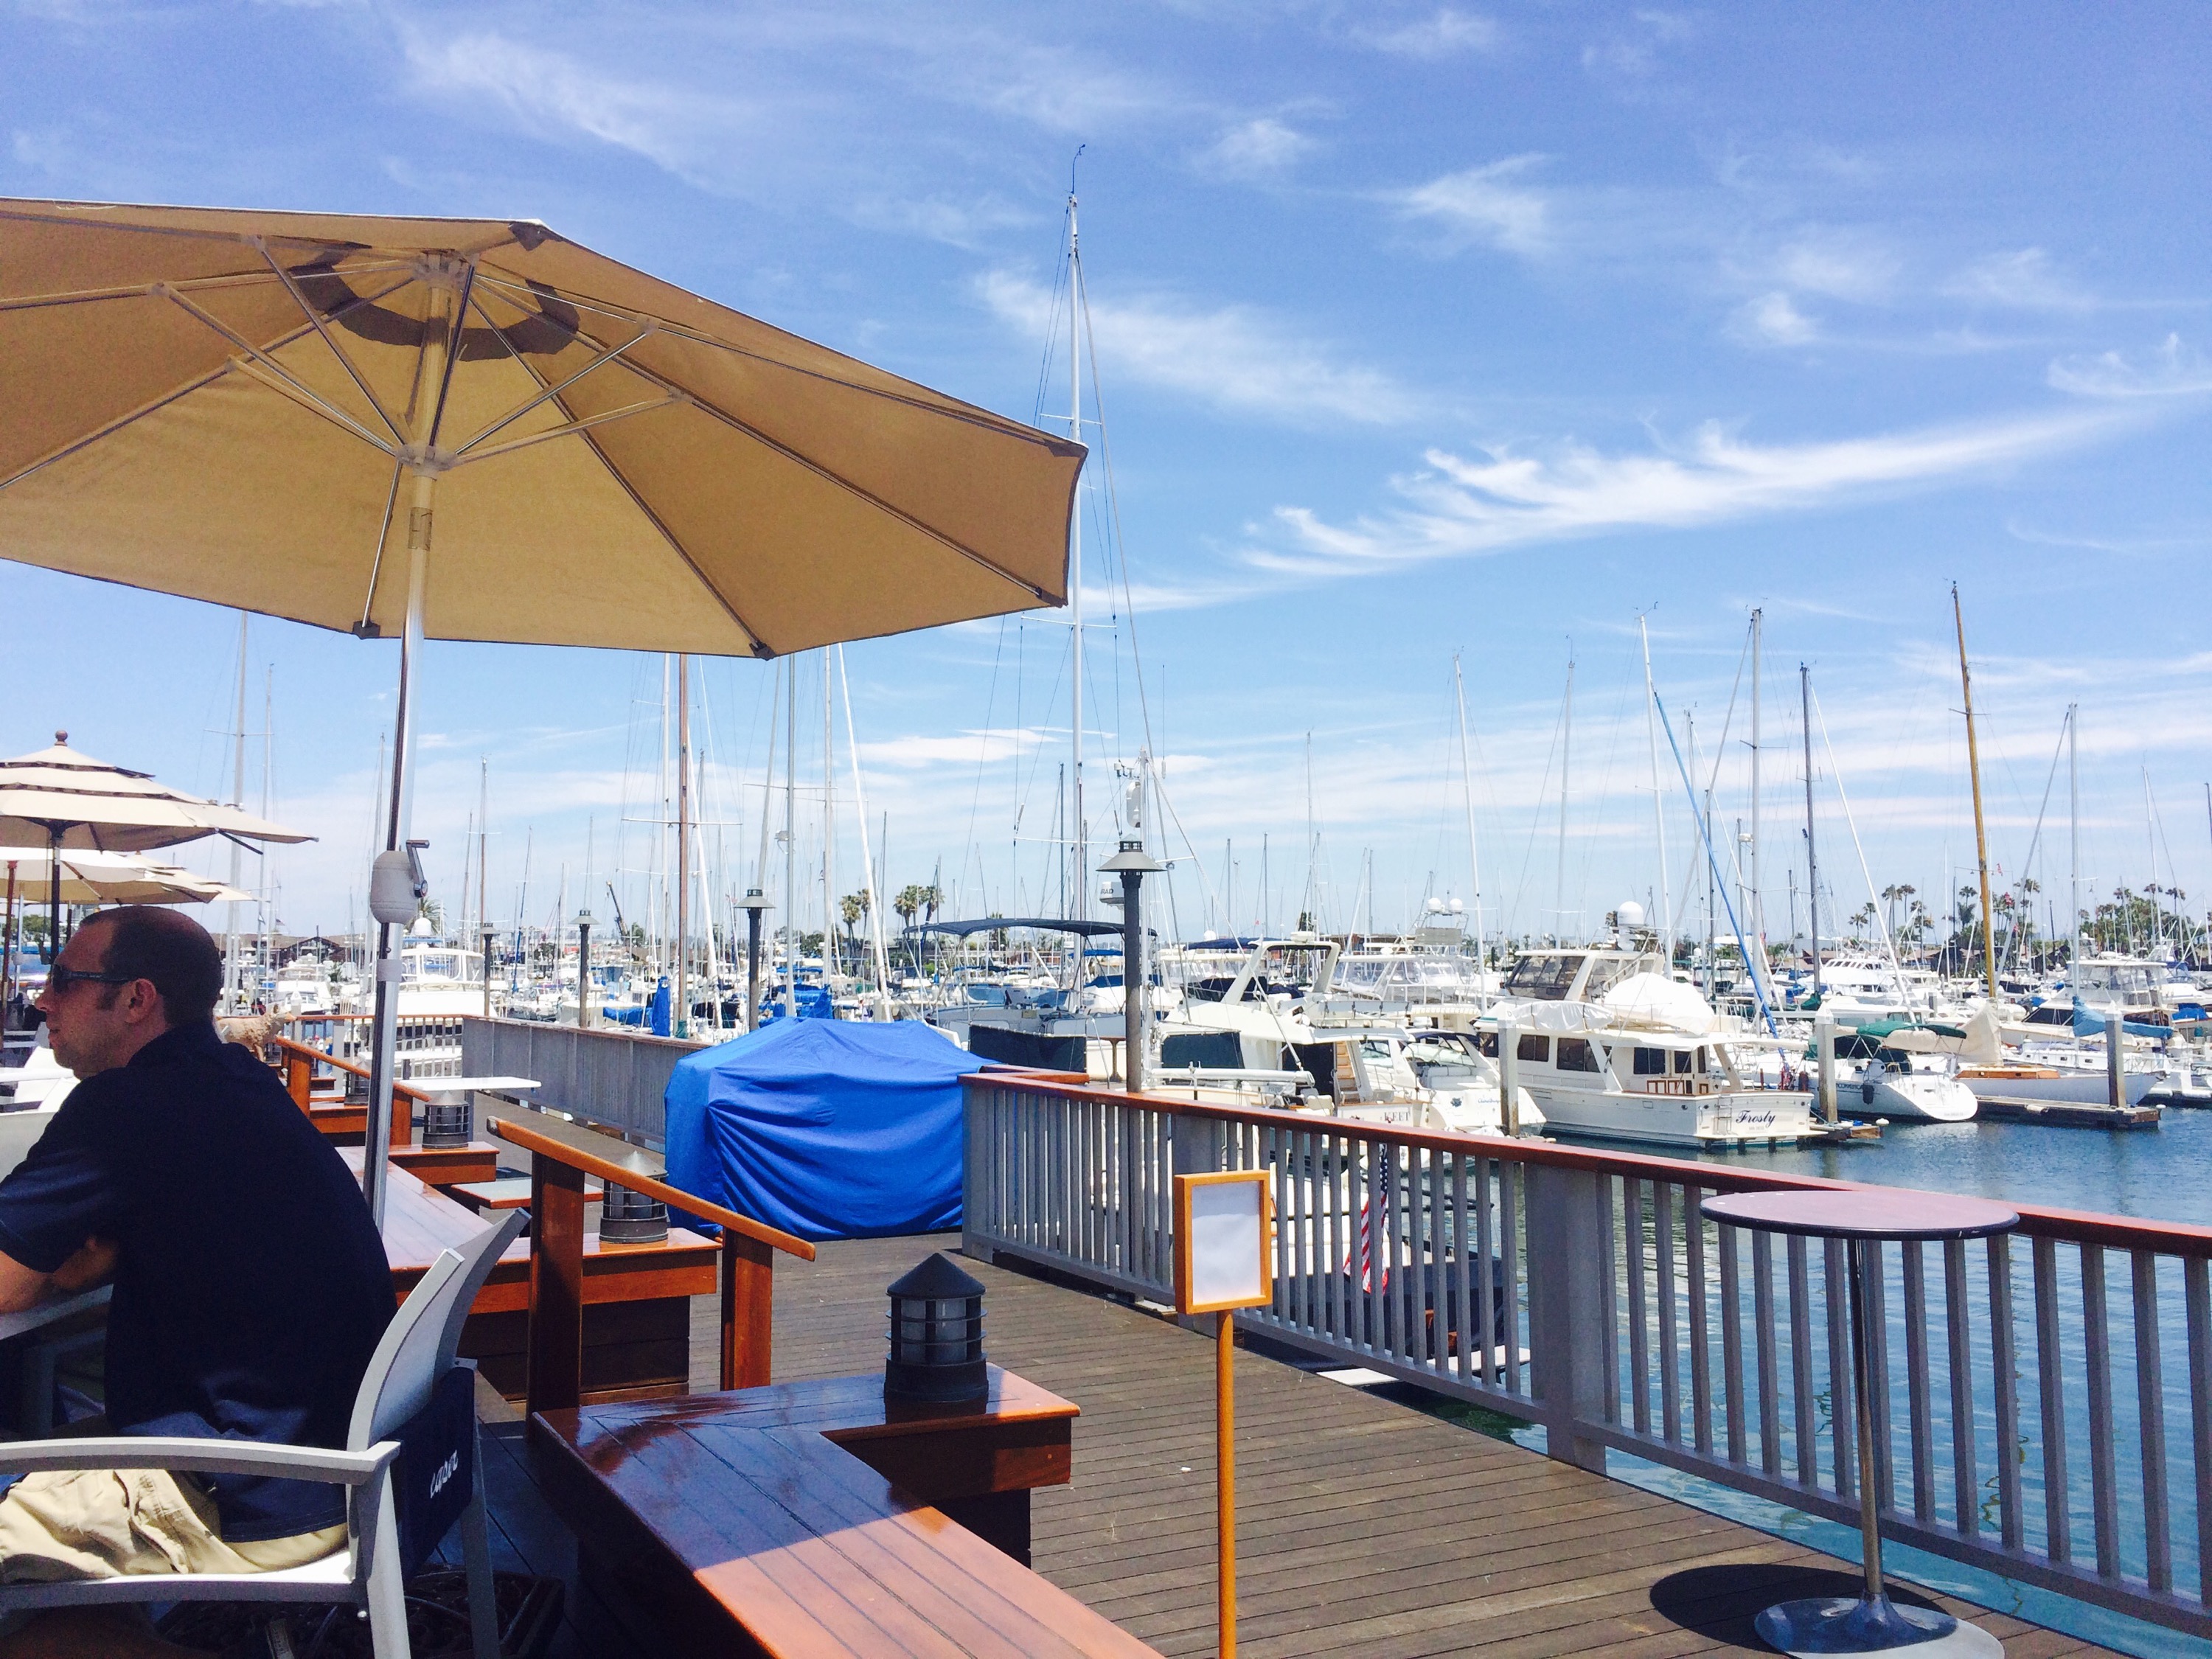 San Diego Yacht Club | wanderlustlady